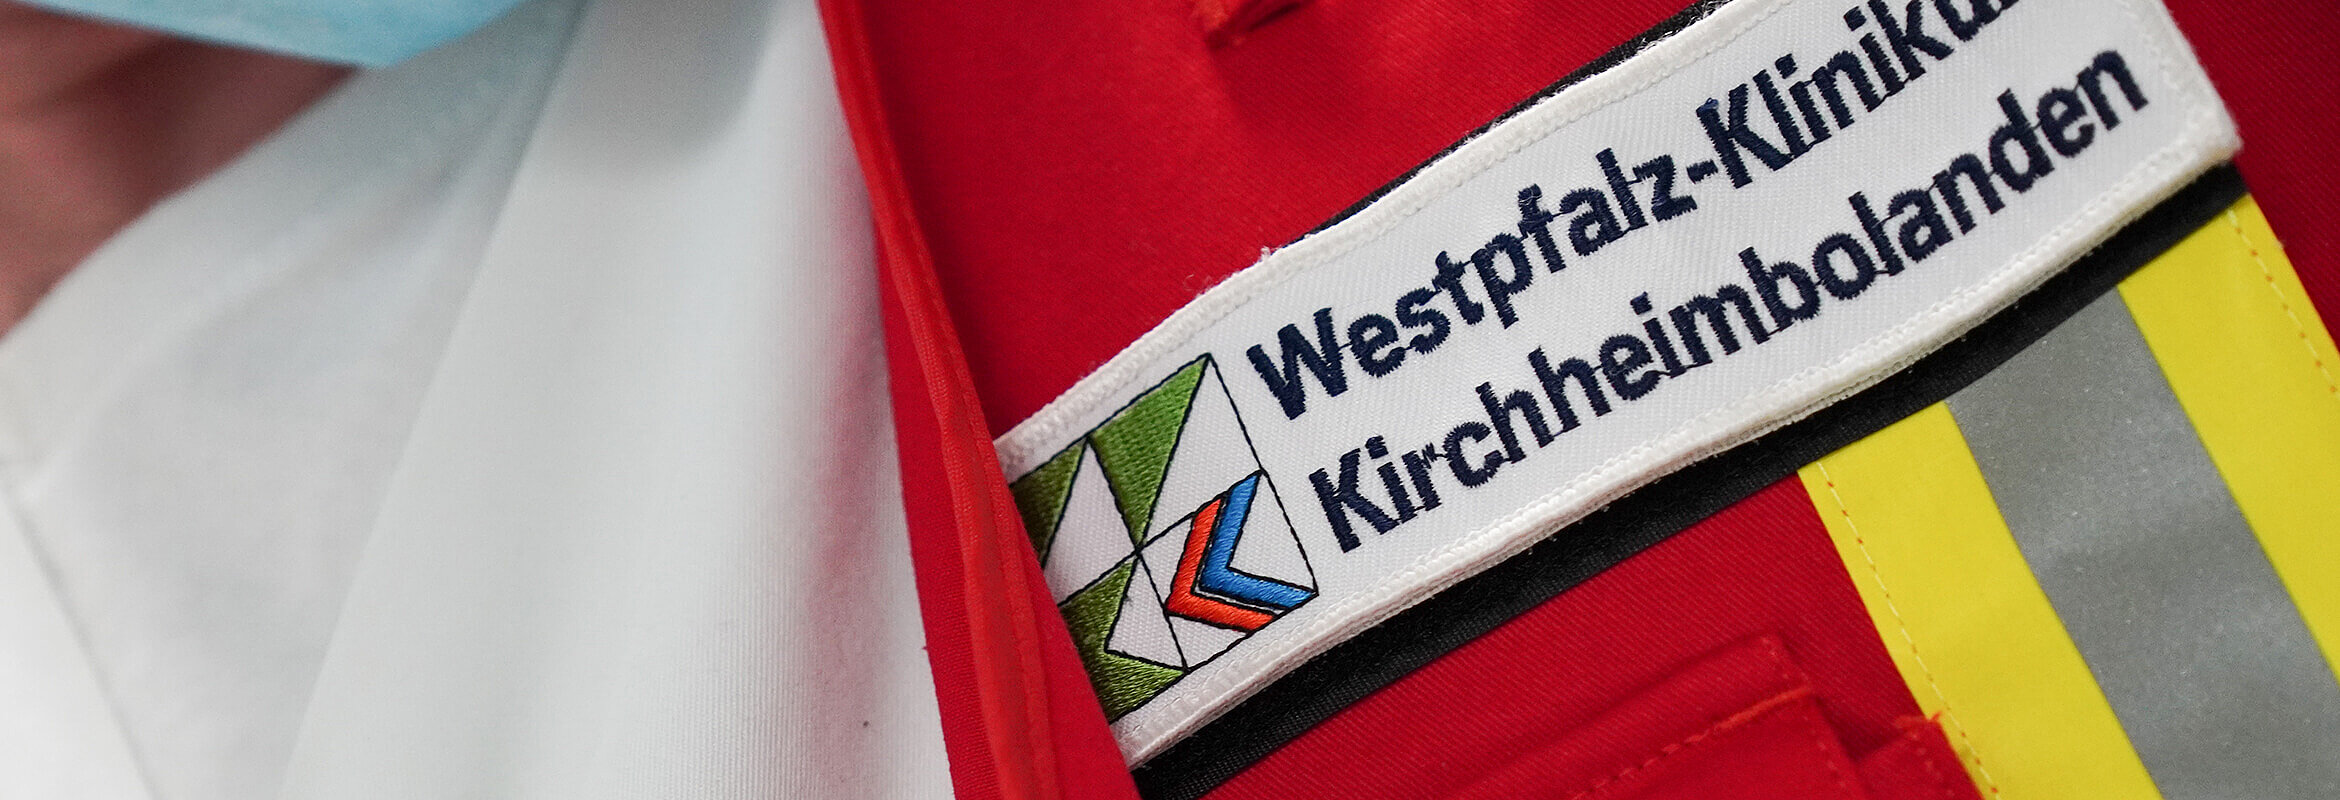 Ein Schild mit der Aufschrift "Westpfalz-Klinikum Kirchheimbolanden"